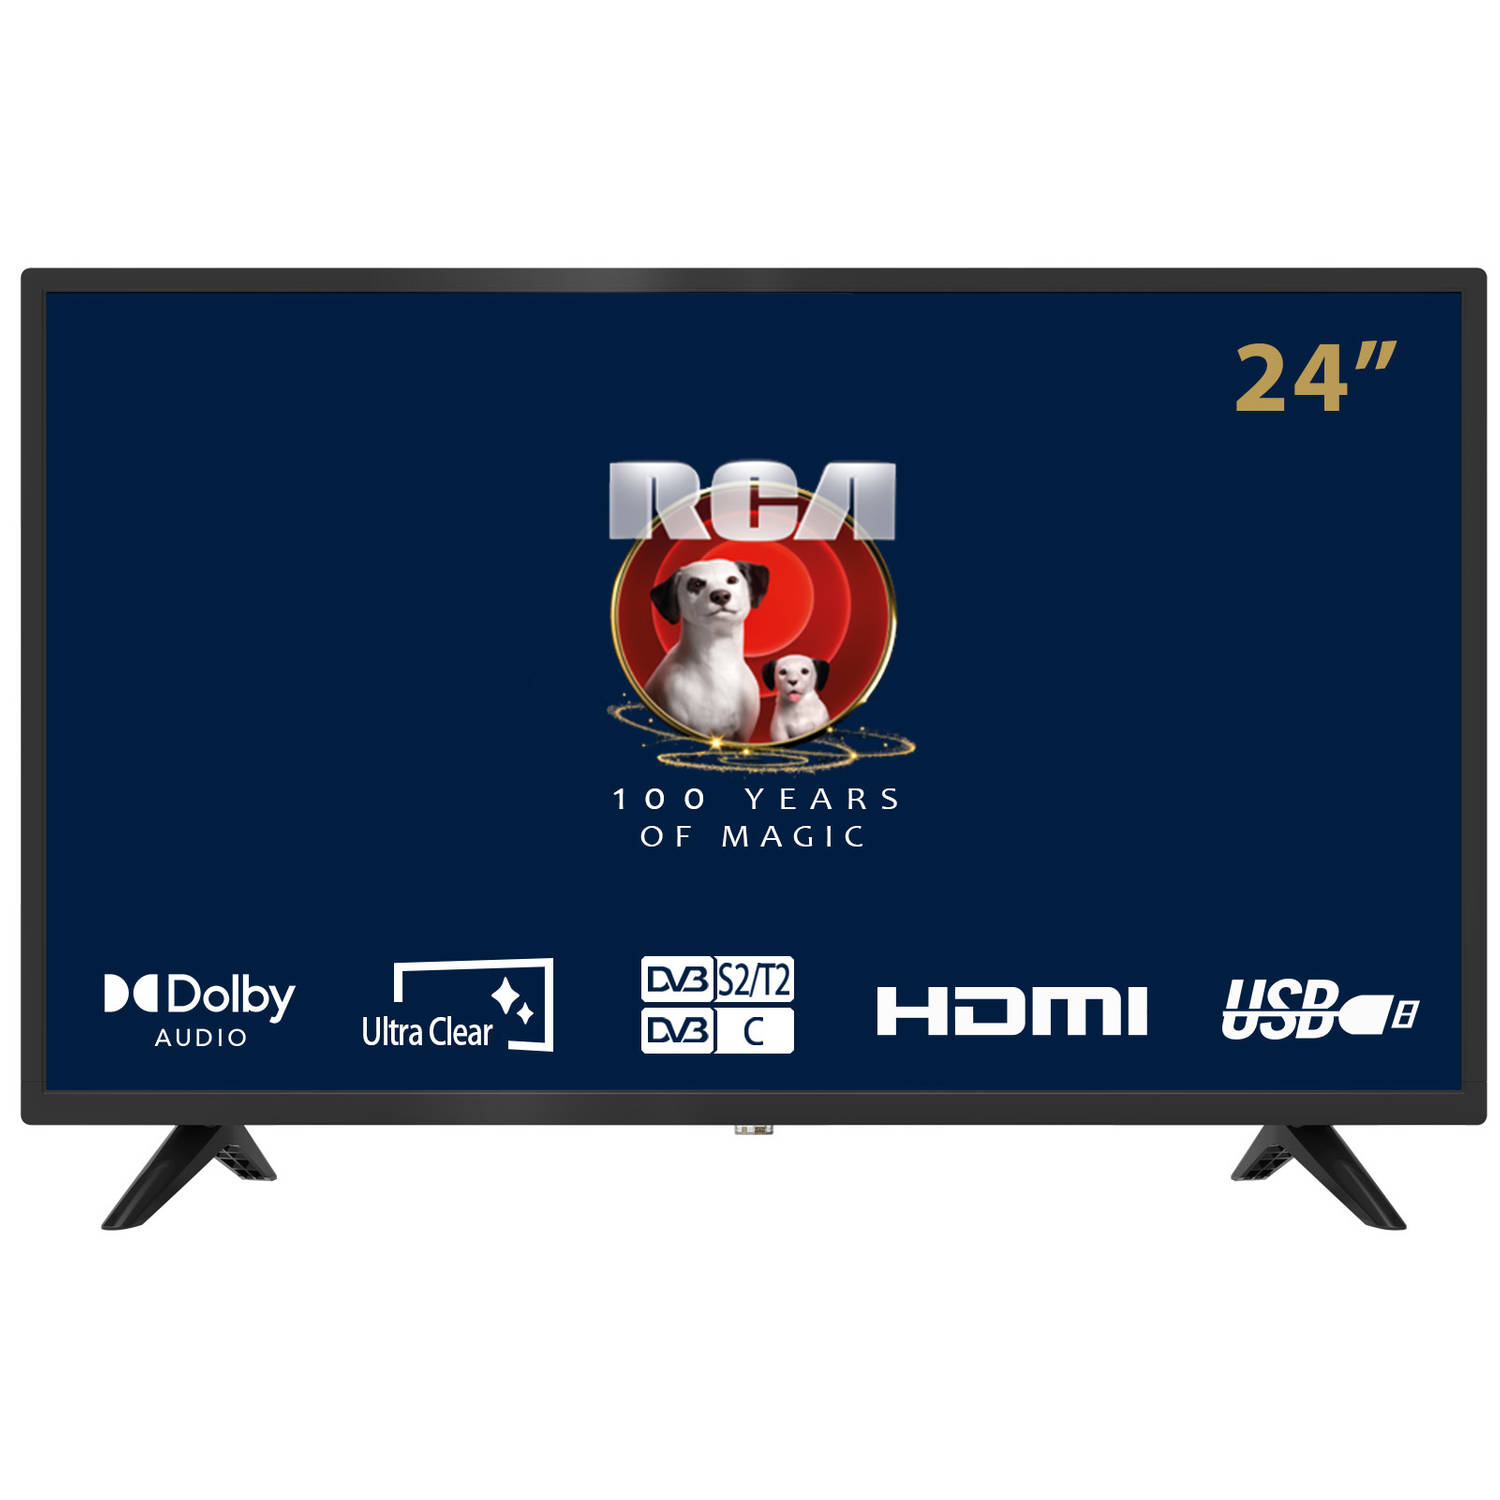 Rca Irb24h3 24inch Hd-ready Standaard Tv